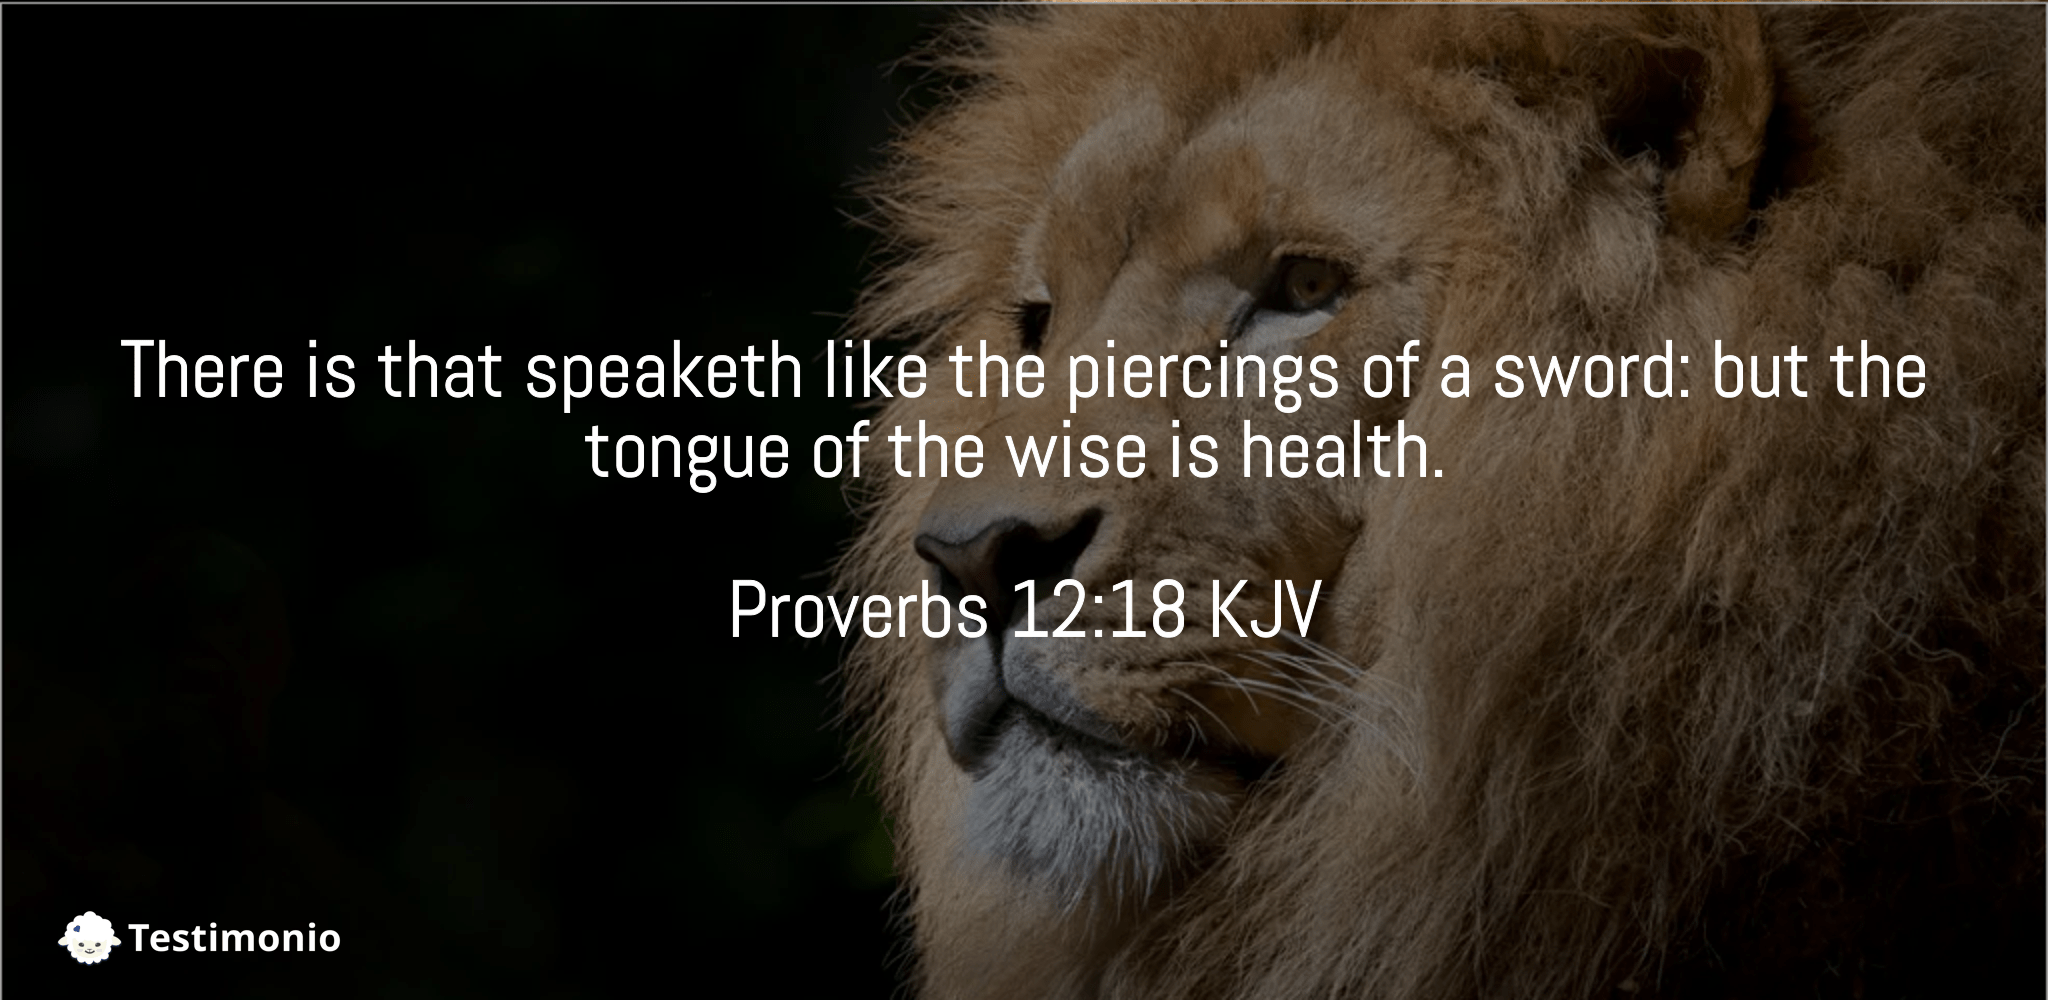 Proverbs 12:18